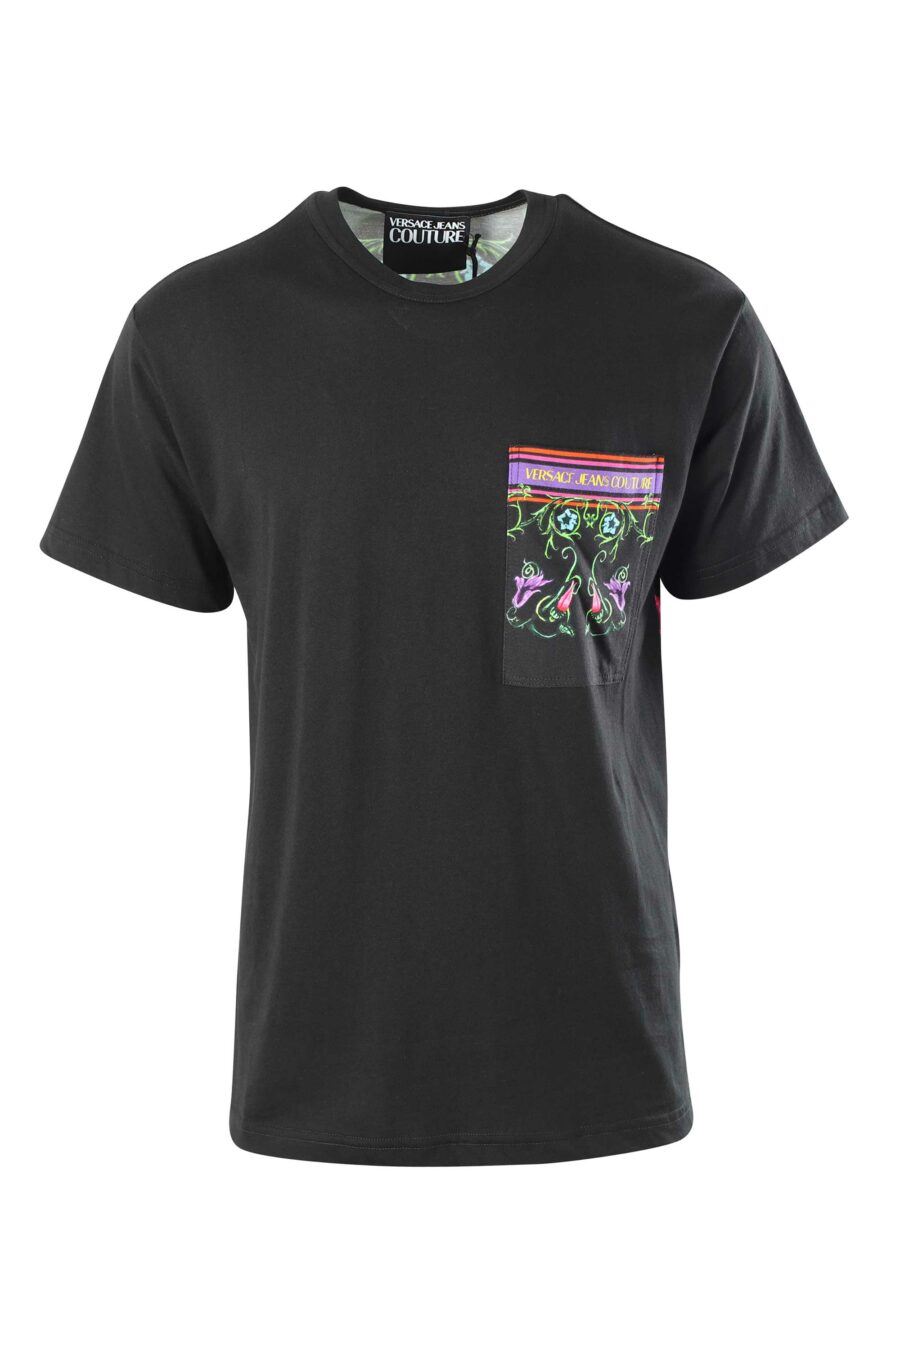 Schwarzes T-Shirt mit mehrfarbiger Blumentasche - 8052019417210